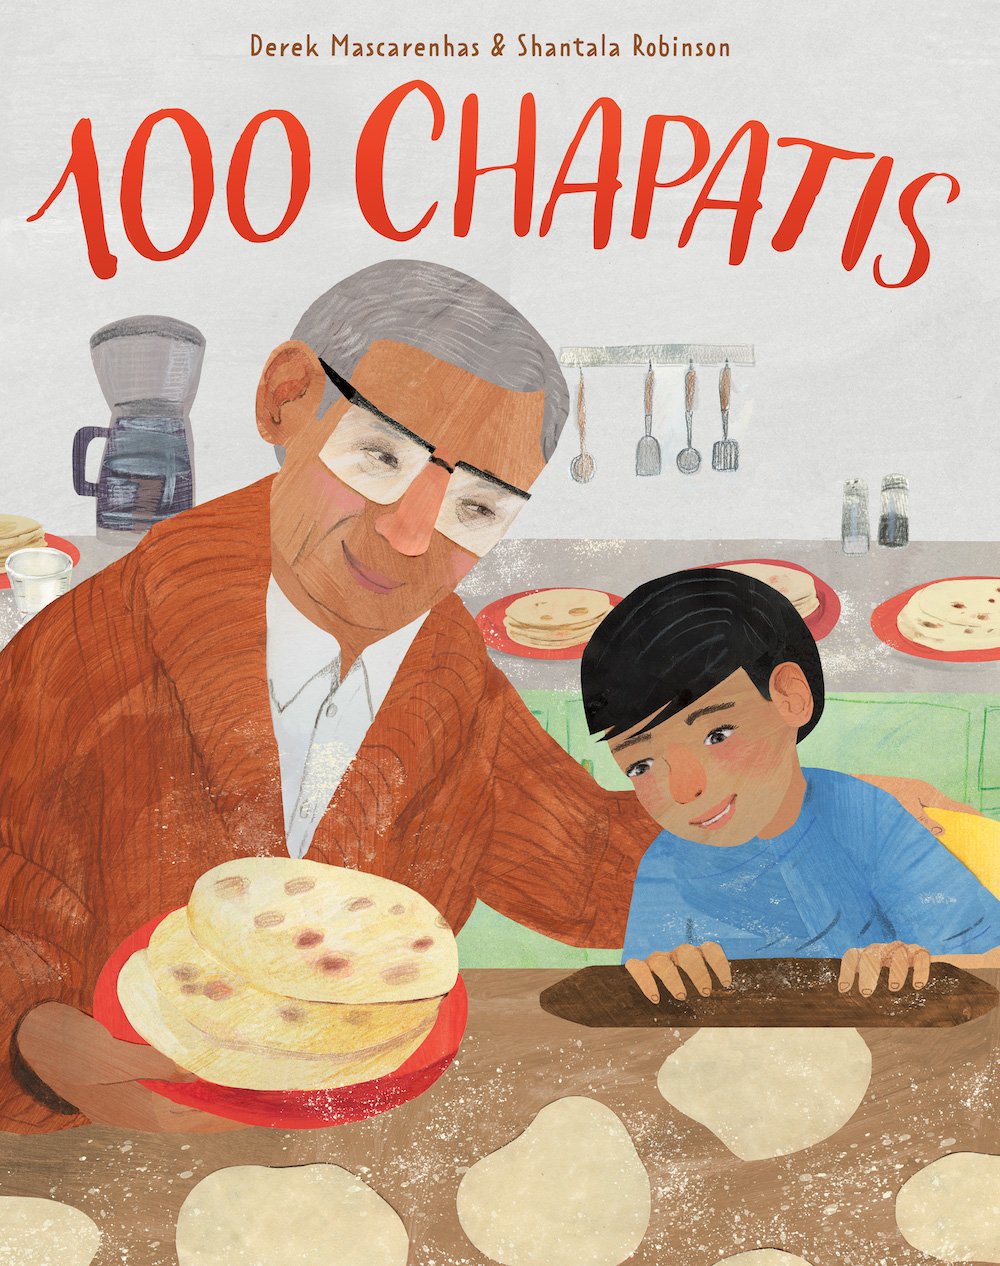 100 Chapitas by Derek Mascarenhas